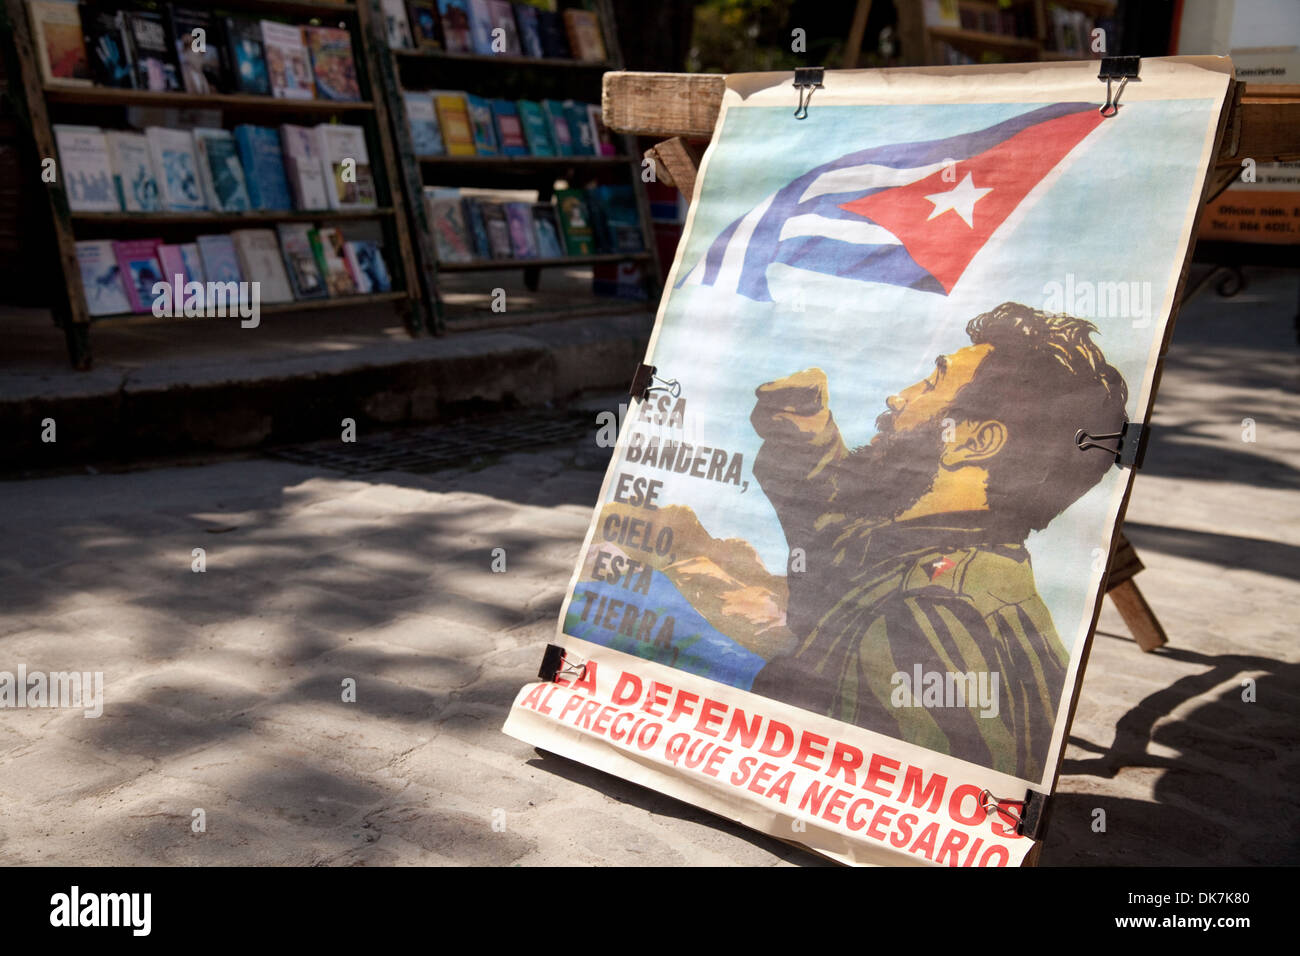 A picture of Fidel Castro and the revolution, Plaza de Armas Square Havana, Cuba, caribbean Stock Photo